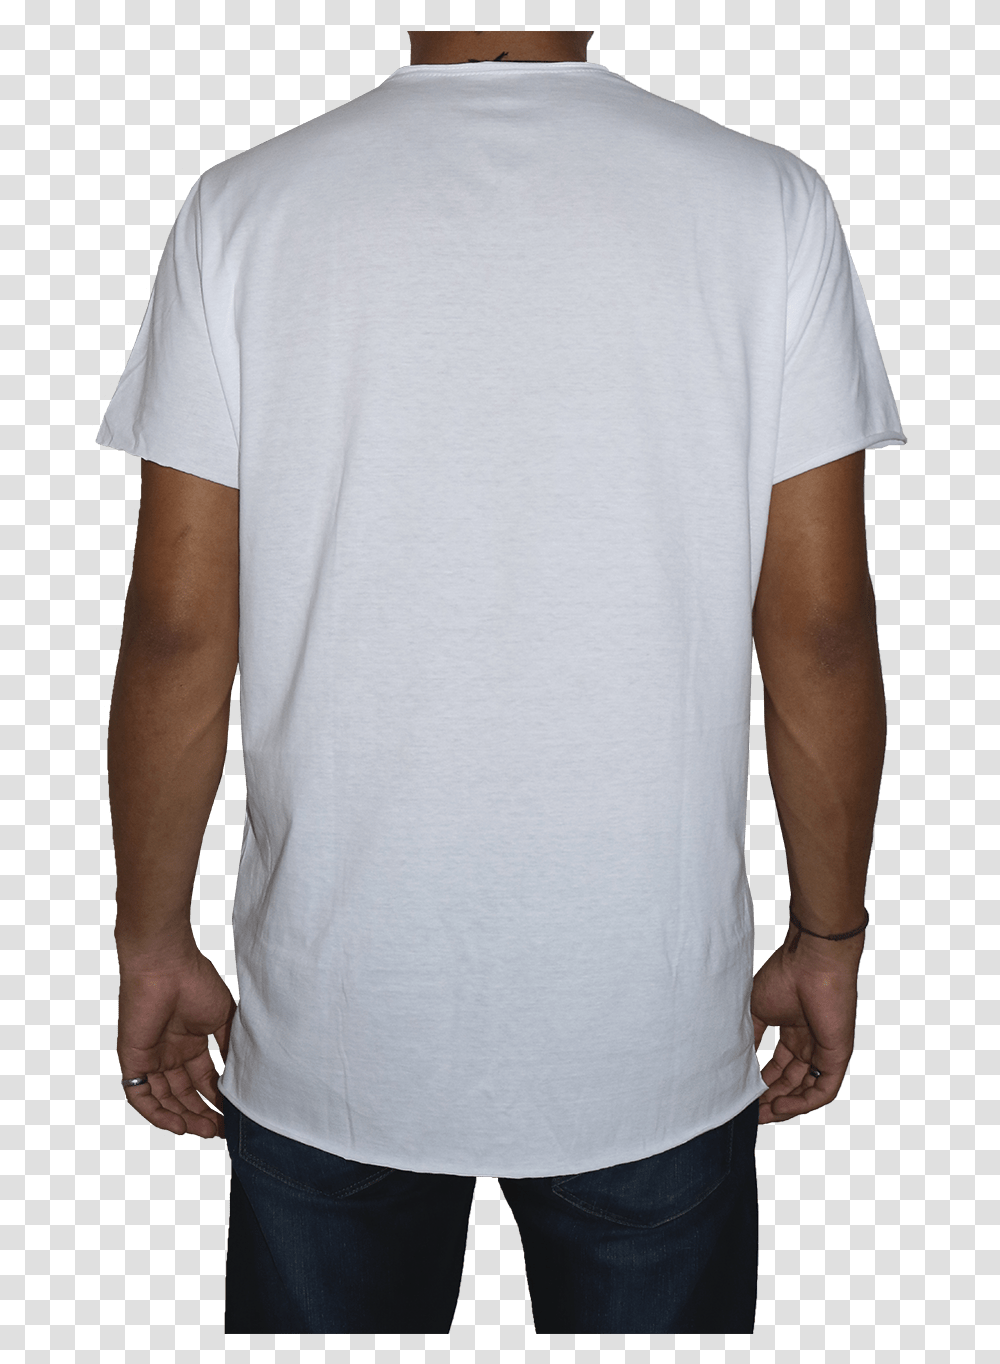 Camiseta Masculina Branca Naturaleza Flor Molde Active Shirt, Apparel, Sleeve, T-Shirt Transparent Png